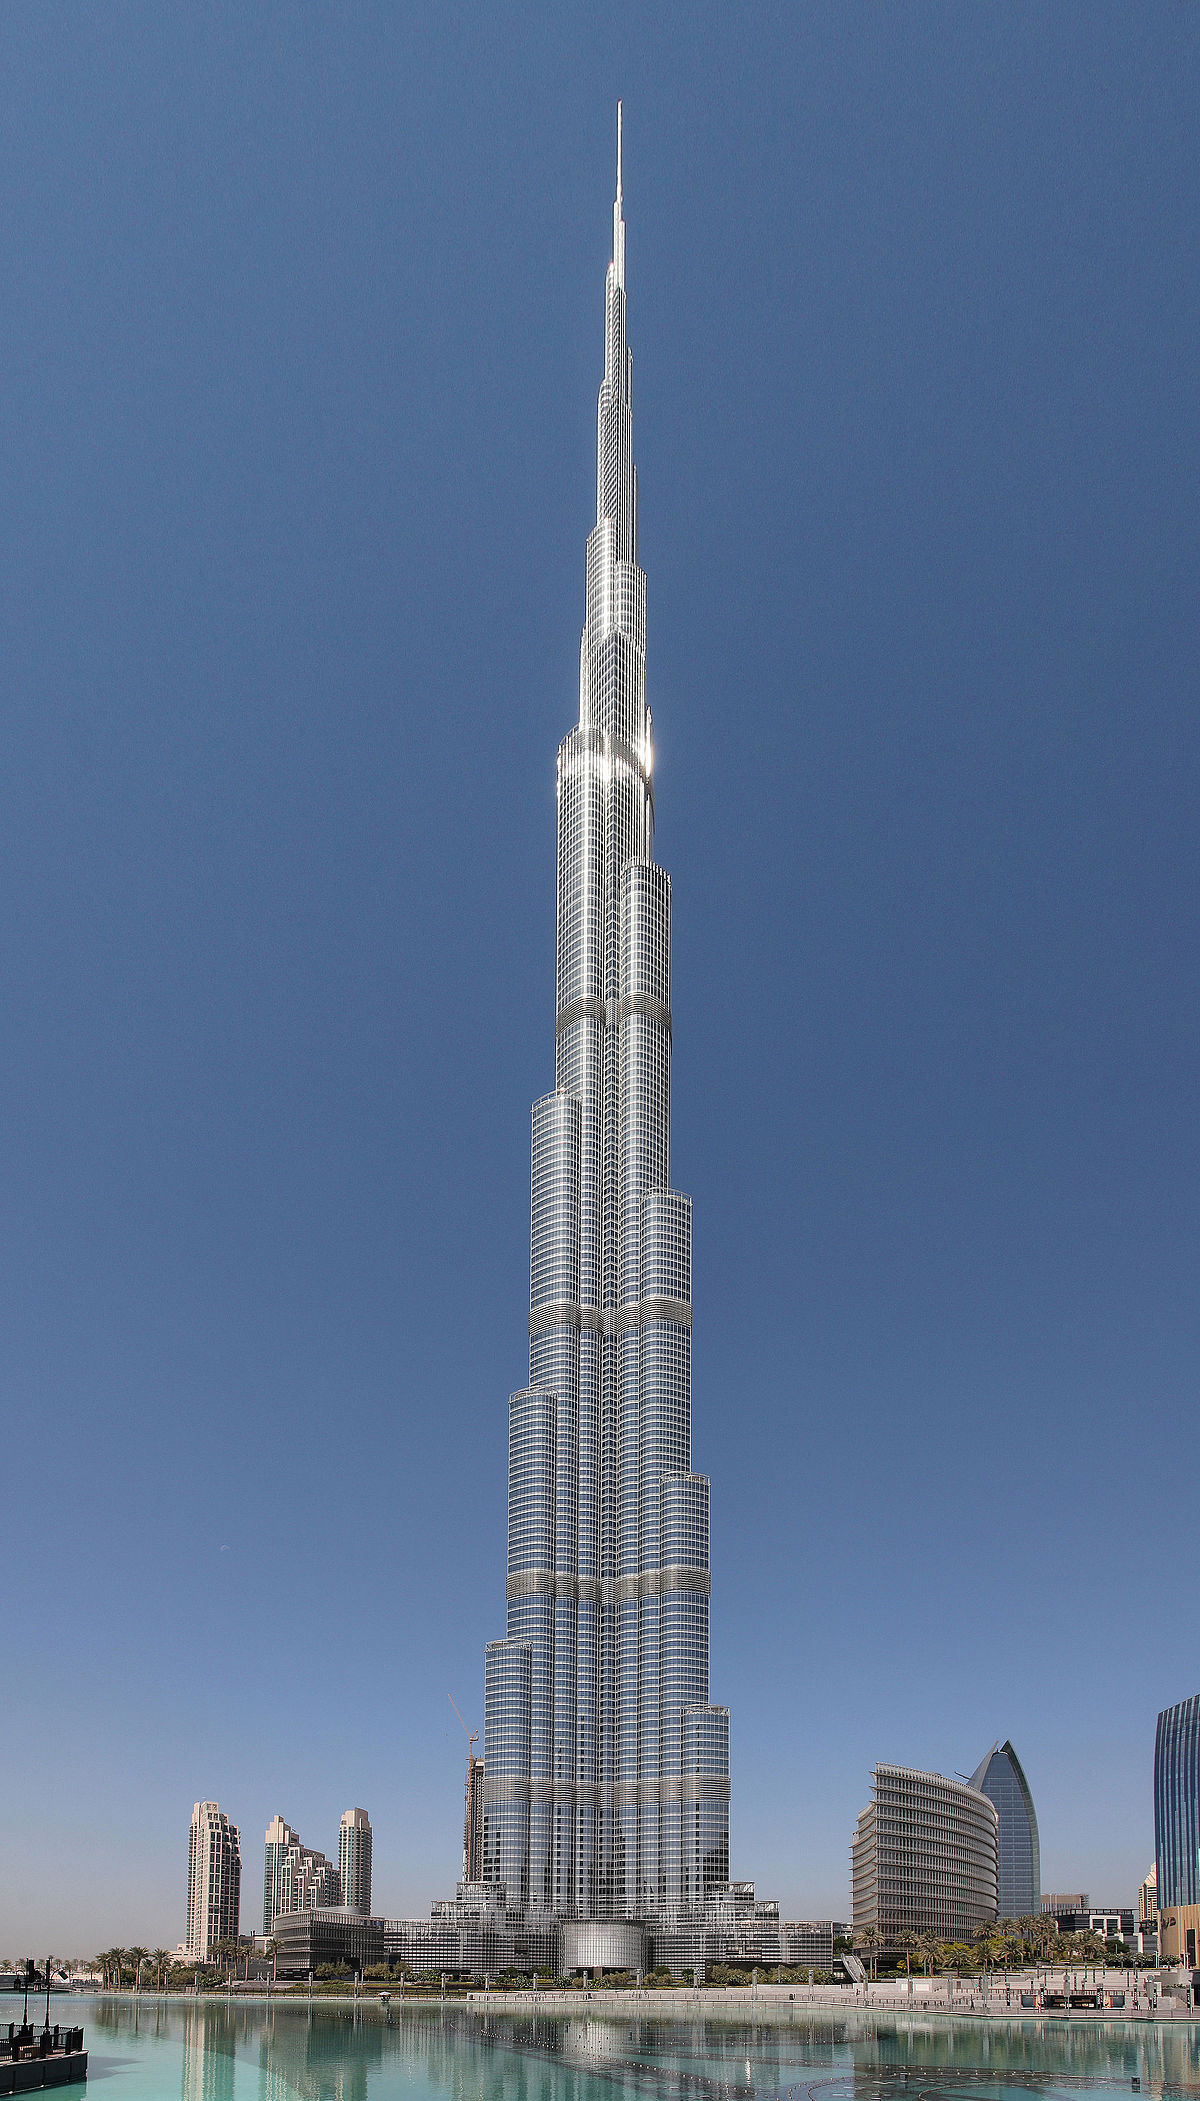 Burj Khalifa - tòa nhà cao nhất thế giới đã khiến triệu người mê mẩn. Nếu bạn cũng muốn đắm chìm trong vẻ đẹp của một công trình kiến trúc đồ sộ và ấn tượng, hãy đến với hình ảnh liên quan đến từ khóa \